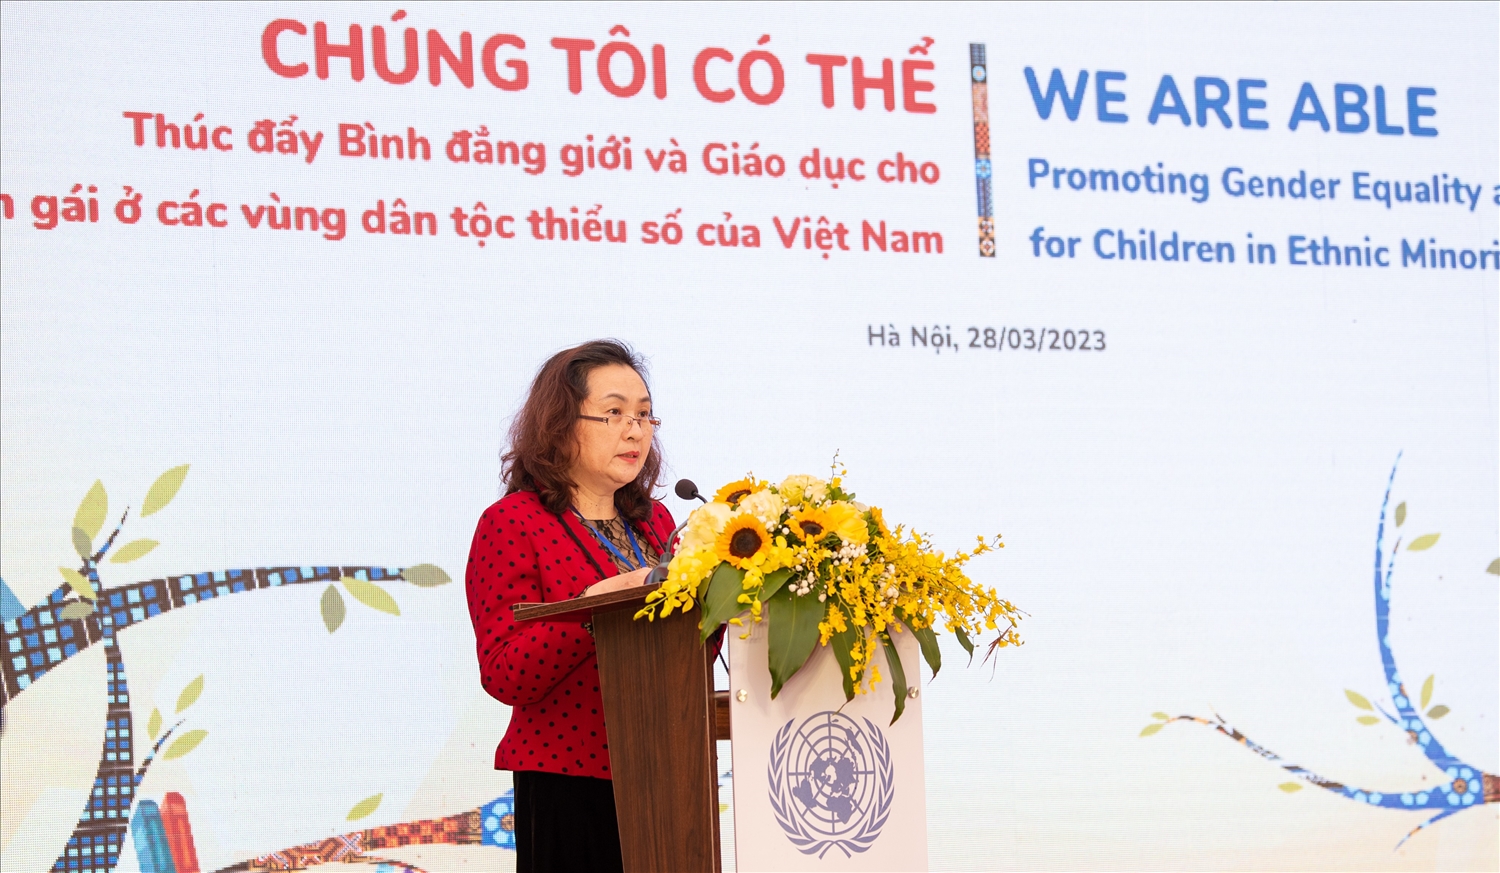 Bà Bế Hồng Vân, Phó Vụ trưởng Vụ Chính sách- Uỷ ban Dân tộc, Giám đốc Ban Quản lý Dự án EMPS phát biểu tại lễ công bố